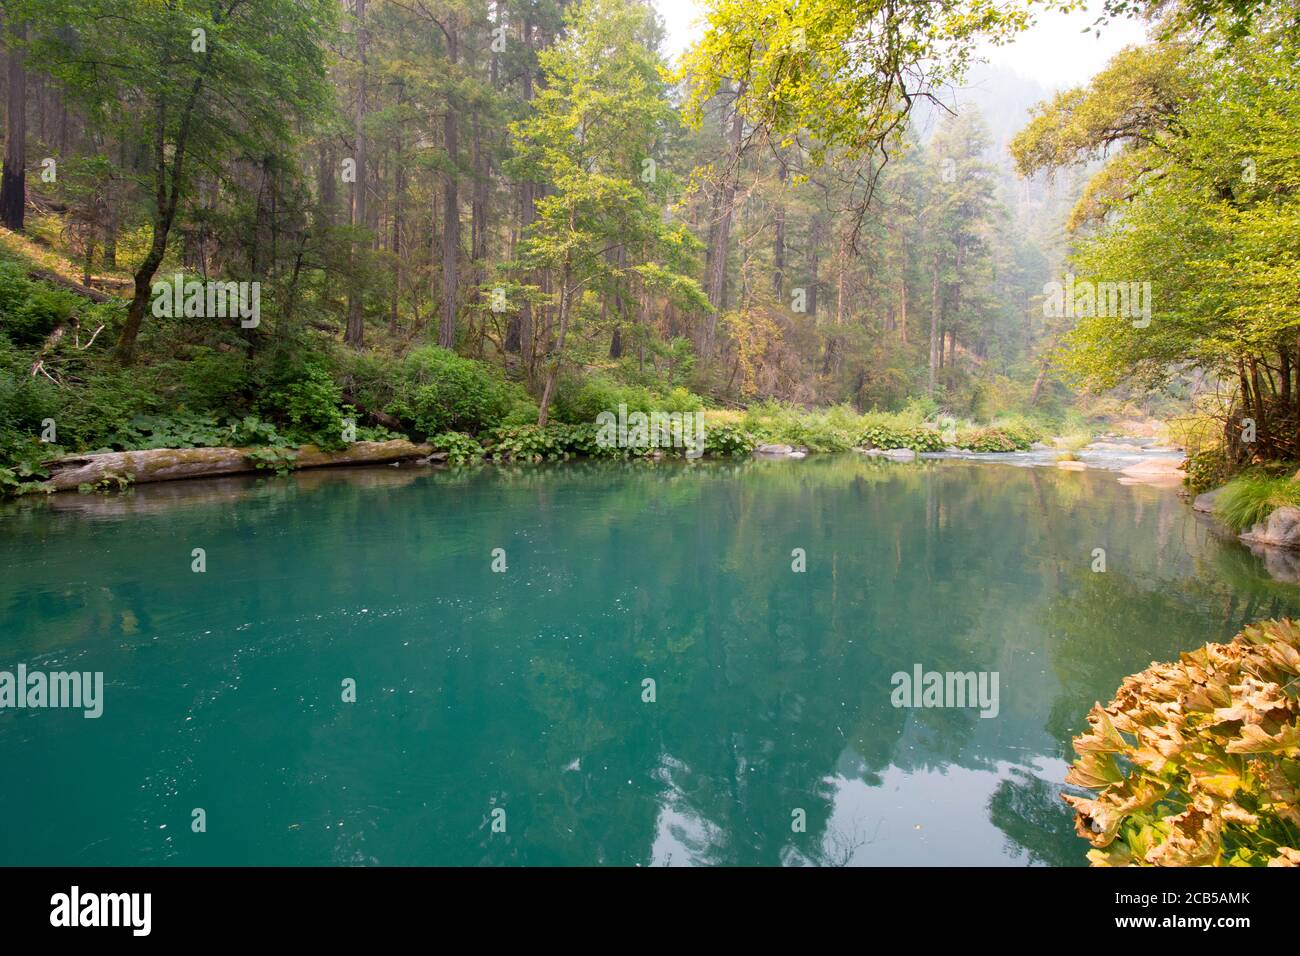 Blue Water stagni in fiume con verde foresta vegetazione su i lati del fiume Foto Stock